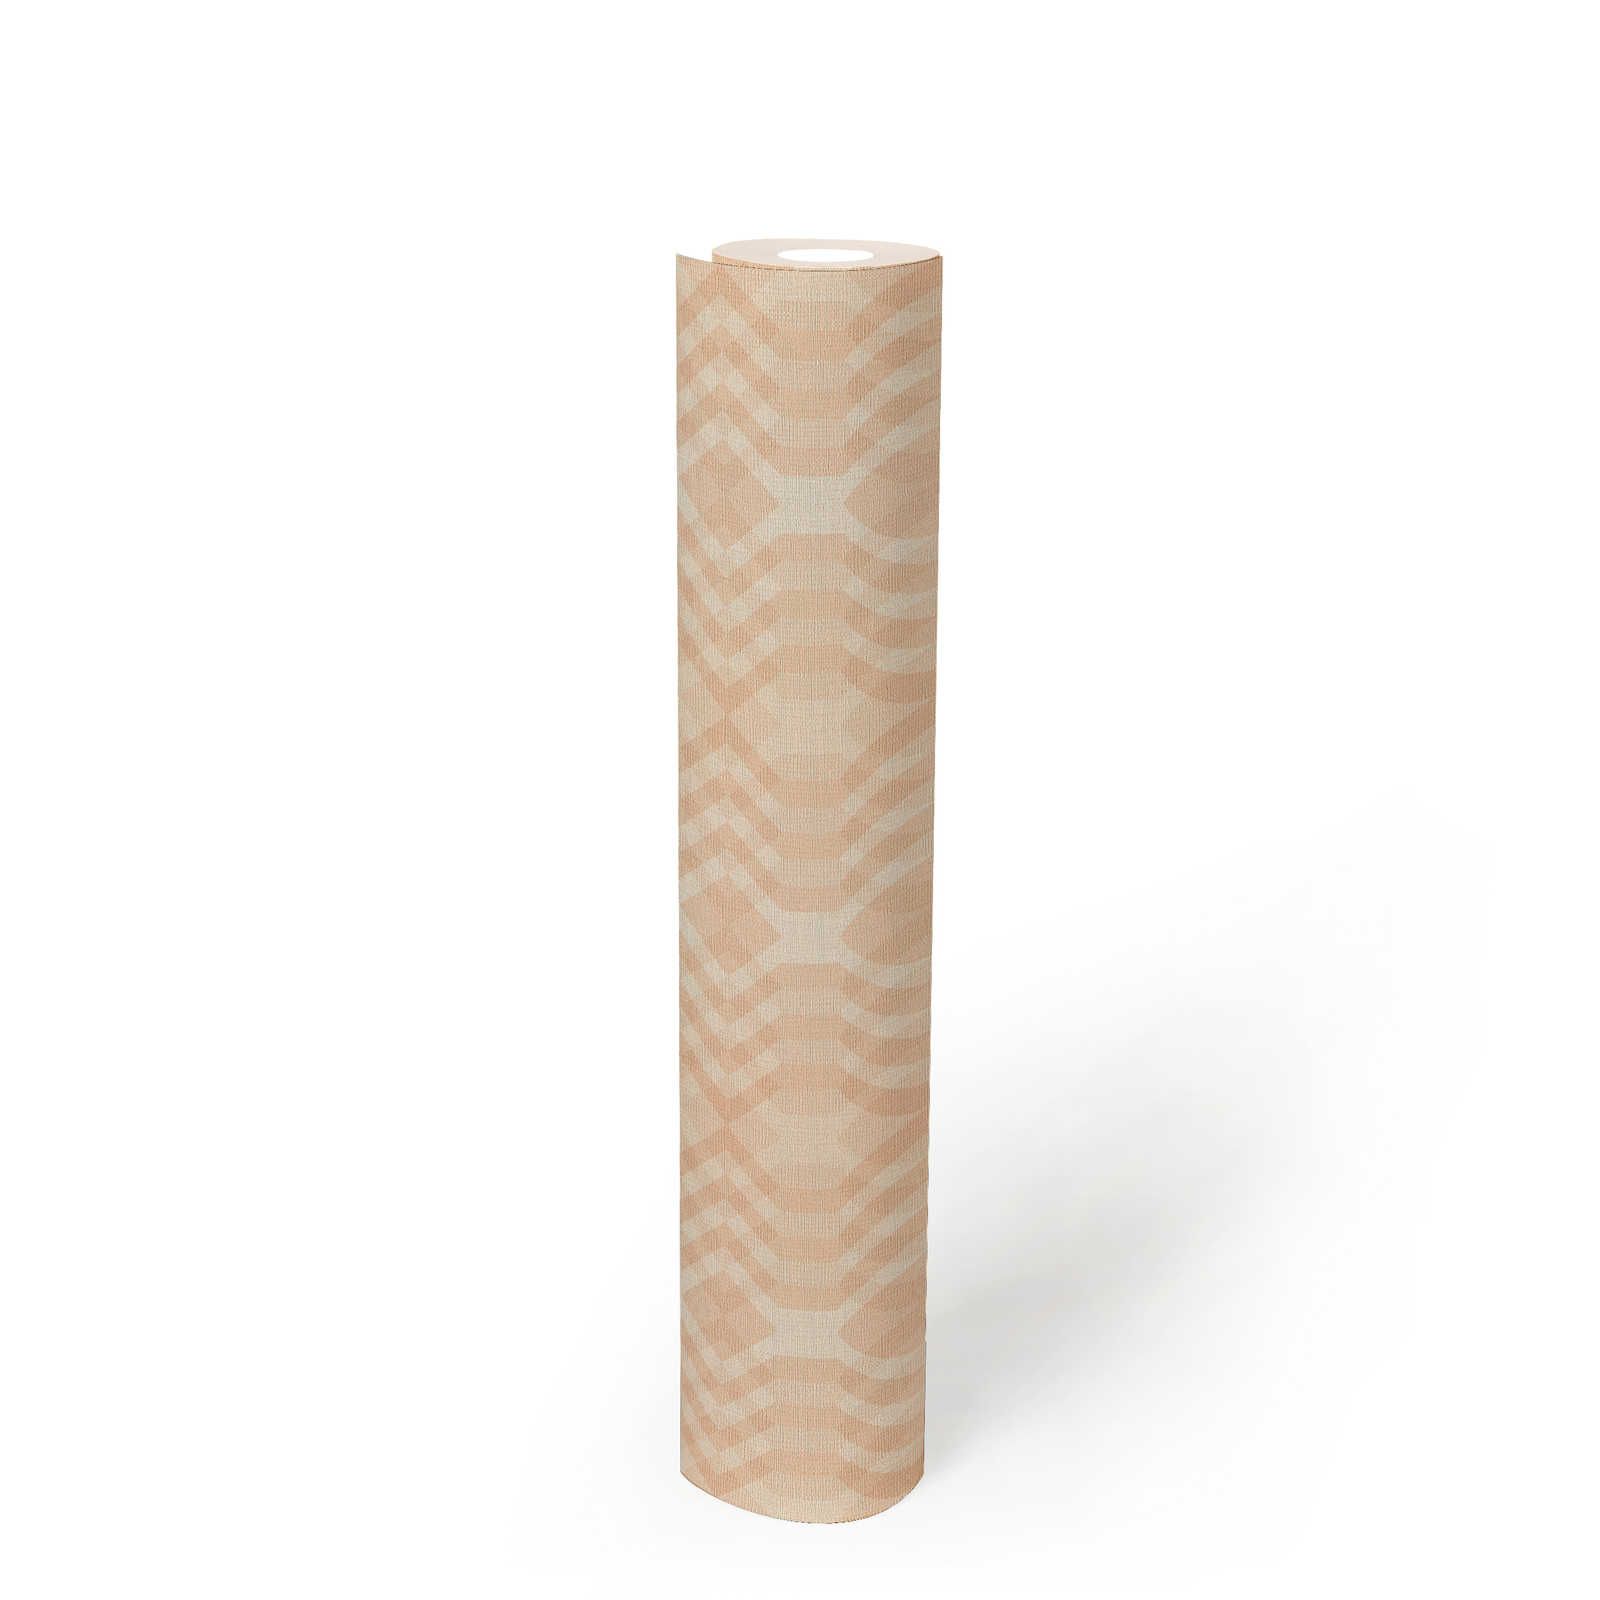             leicht strukturierte Retro Tapete mit geometrischem Muster – Beige, Creme, Weiß
        